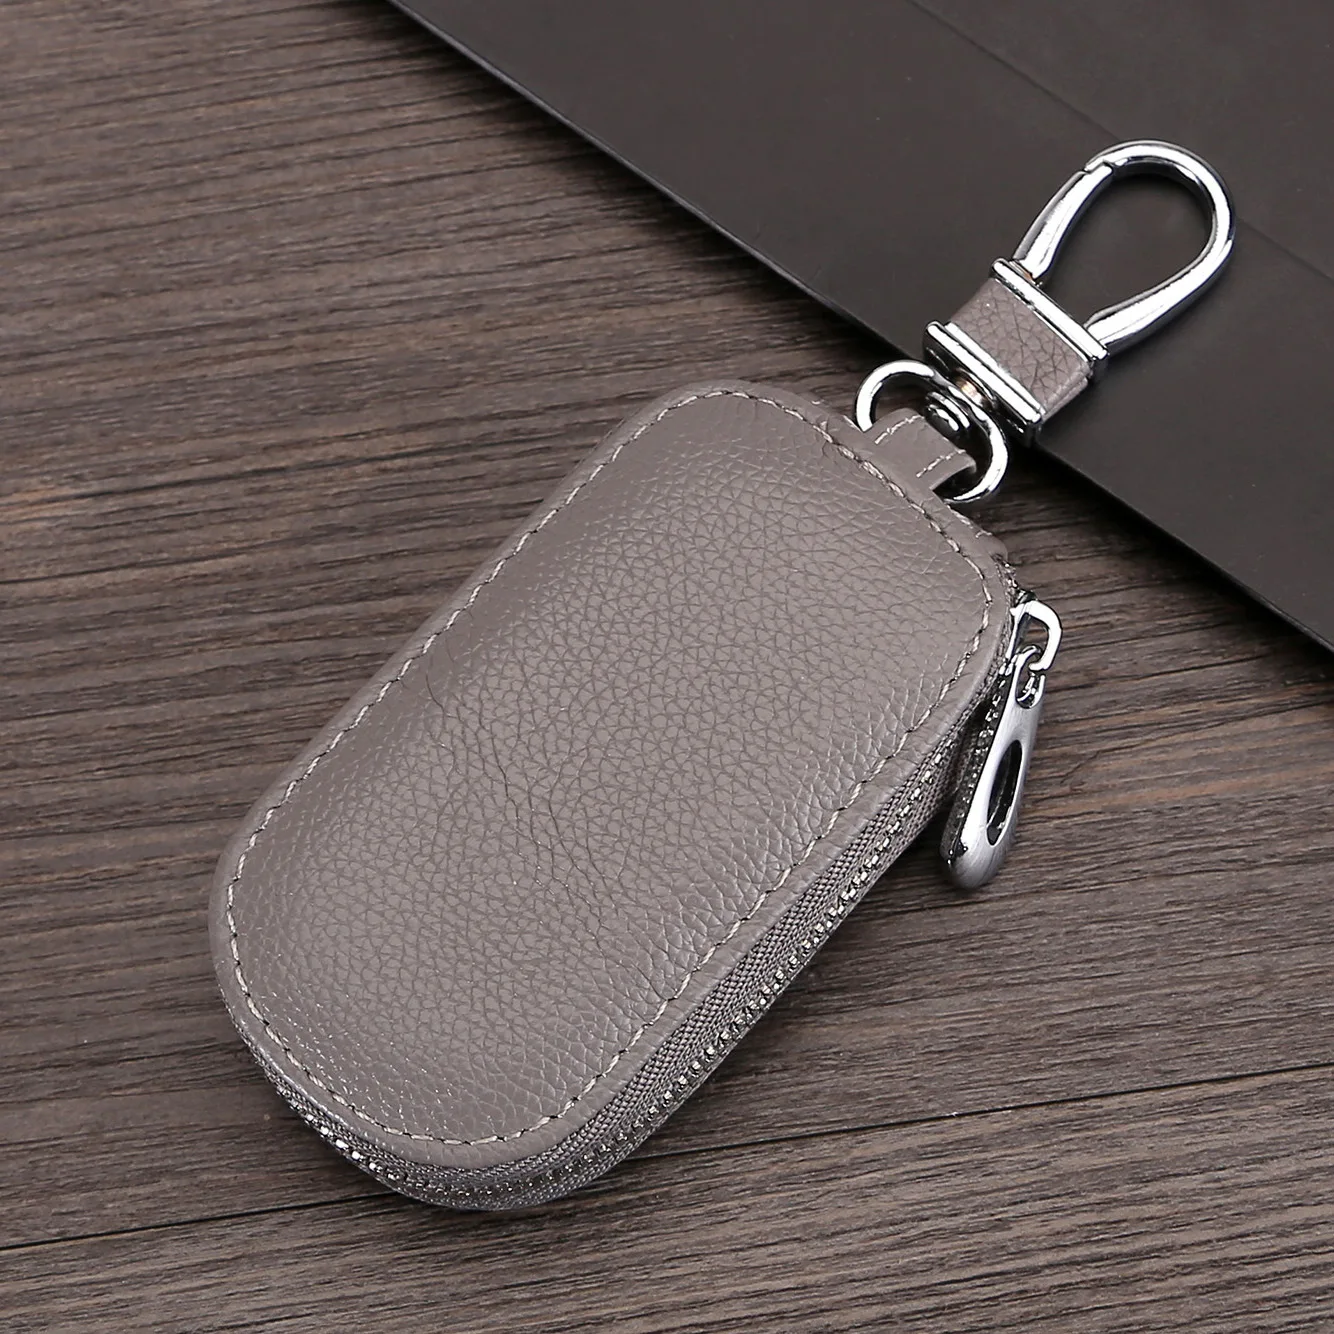 ETya натуральная кожаный брелок для ключей, брелок для ключей для мужчин Организатор ключей экономки Для женщин брелок чехлы кейс на молнии сумка - Цвет: Light gray